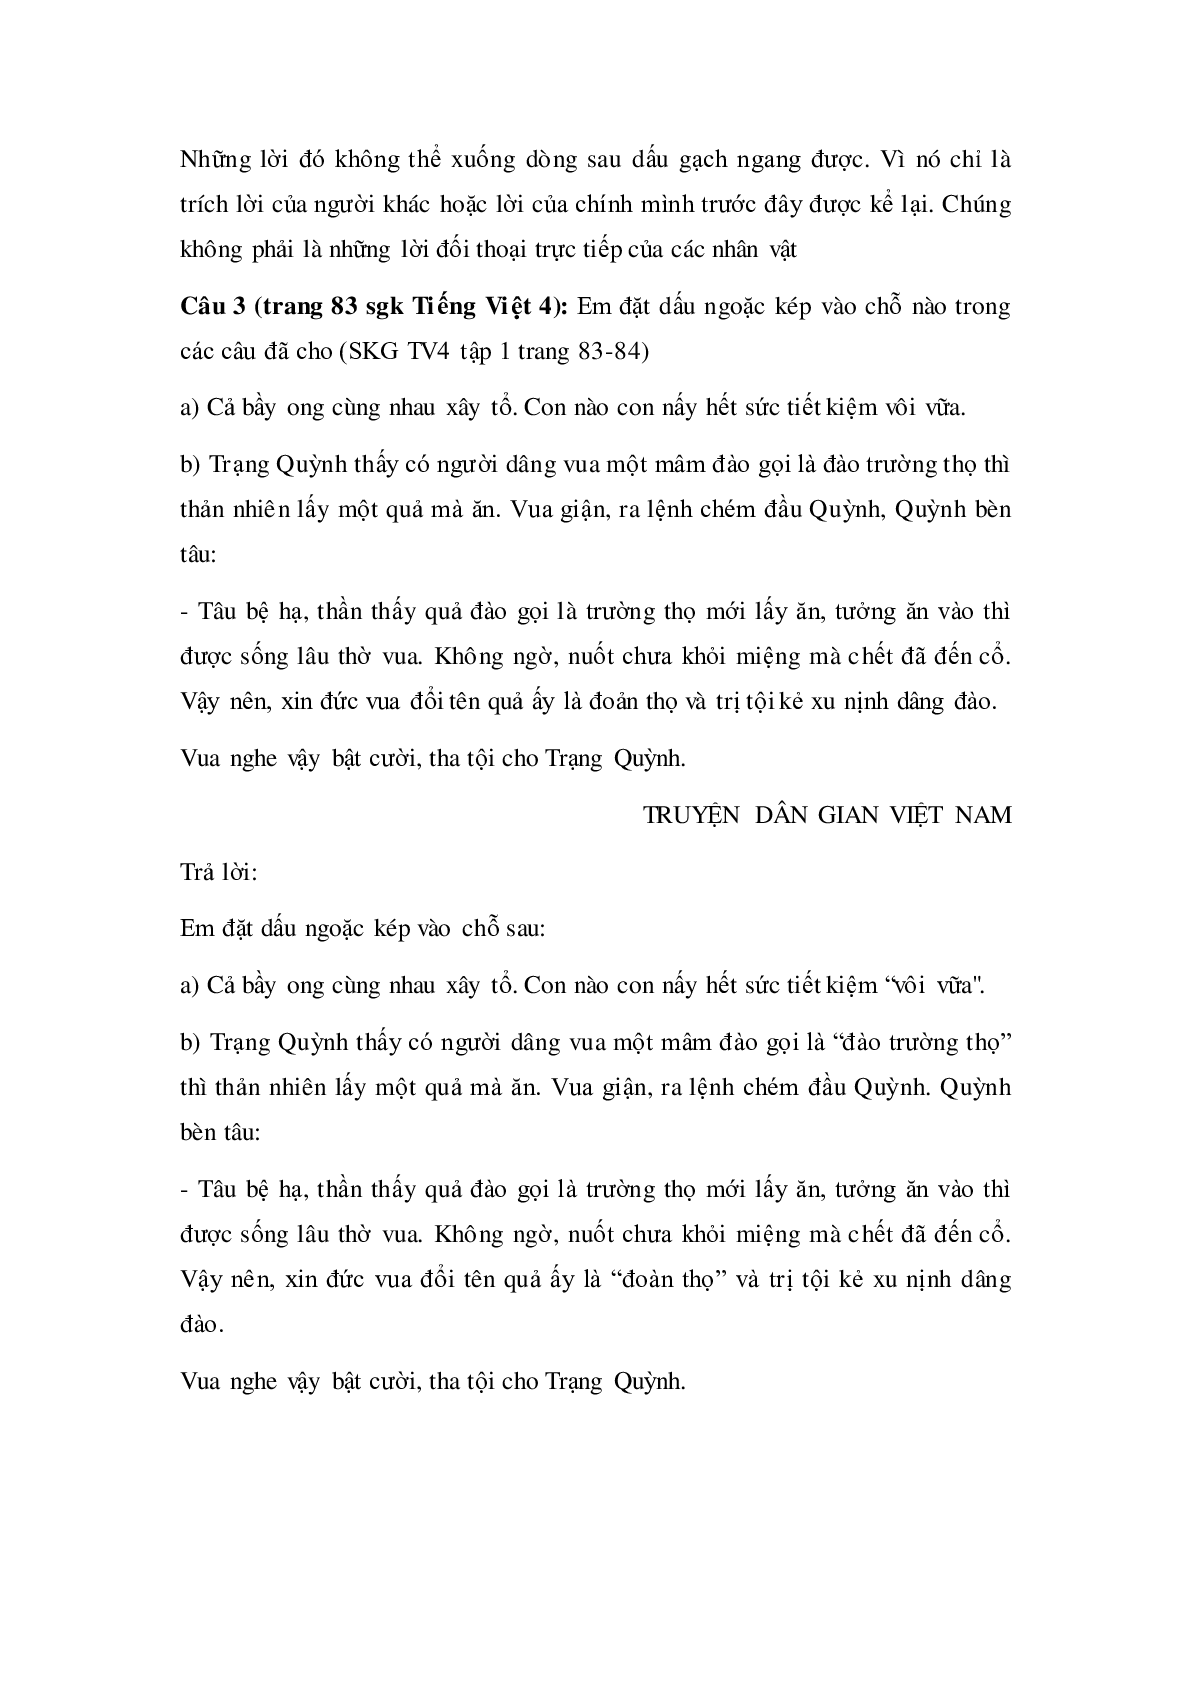 Soạn Tiếng Việt lớp 4: Luyện từ và câu: Dấu ngoặc kép mới nhất (trang 3)